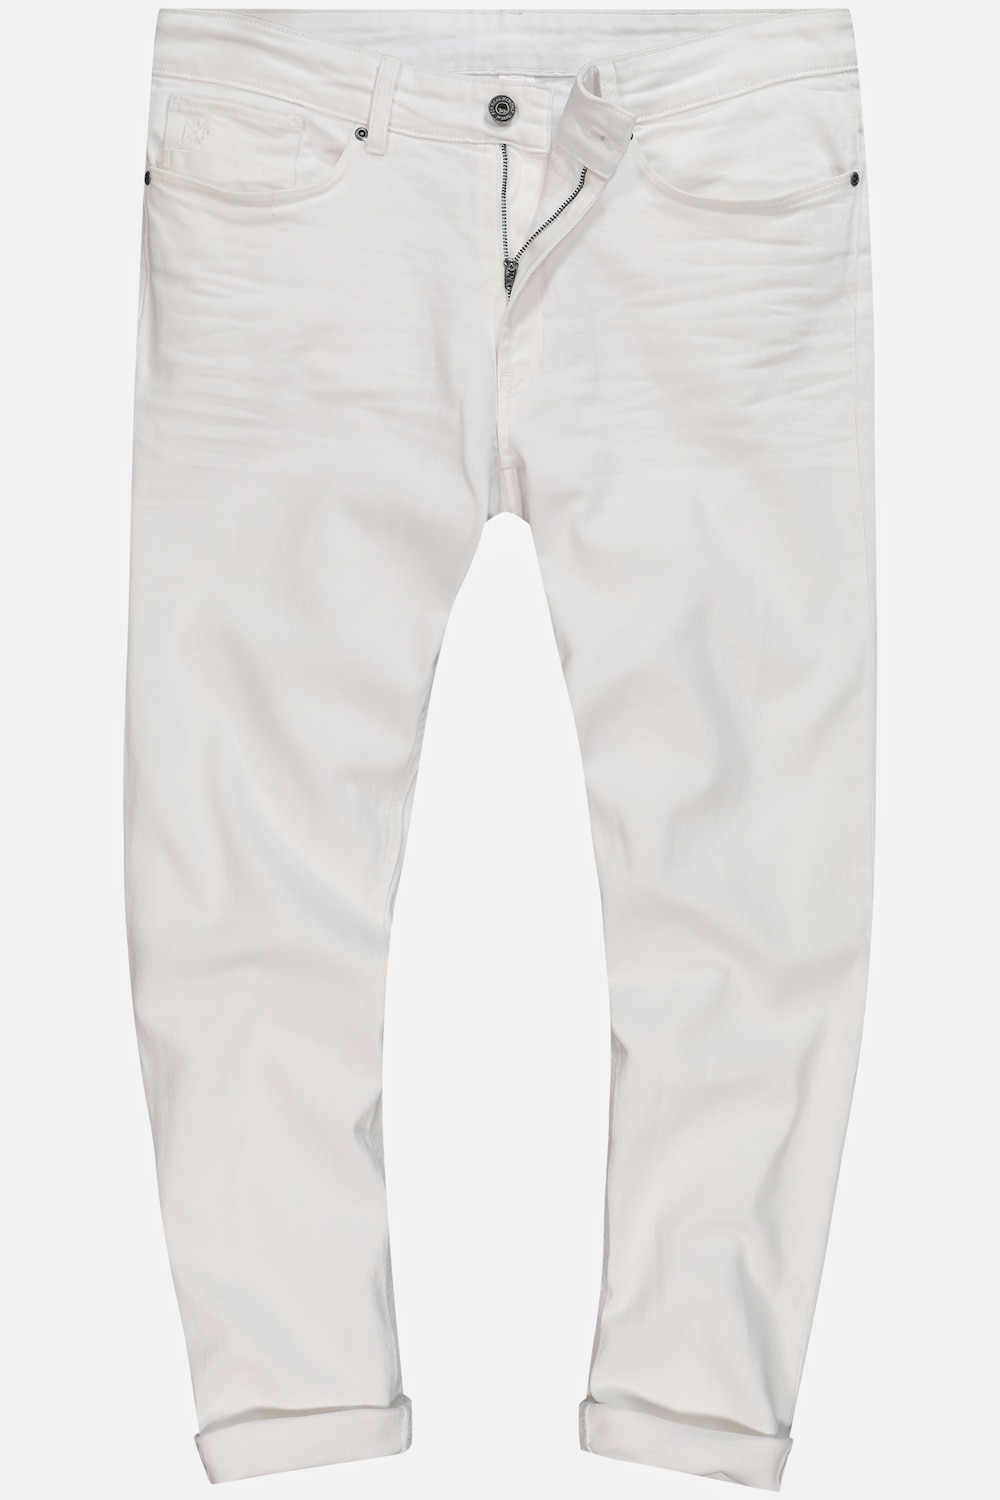 Grote Maten Jeans, Heren, wit, Maat: 118, Katoen, JP1880